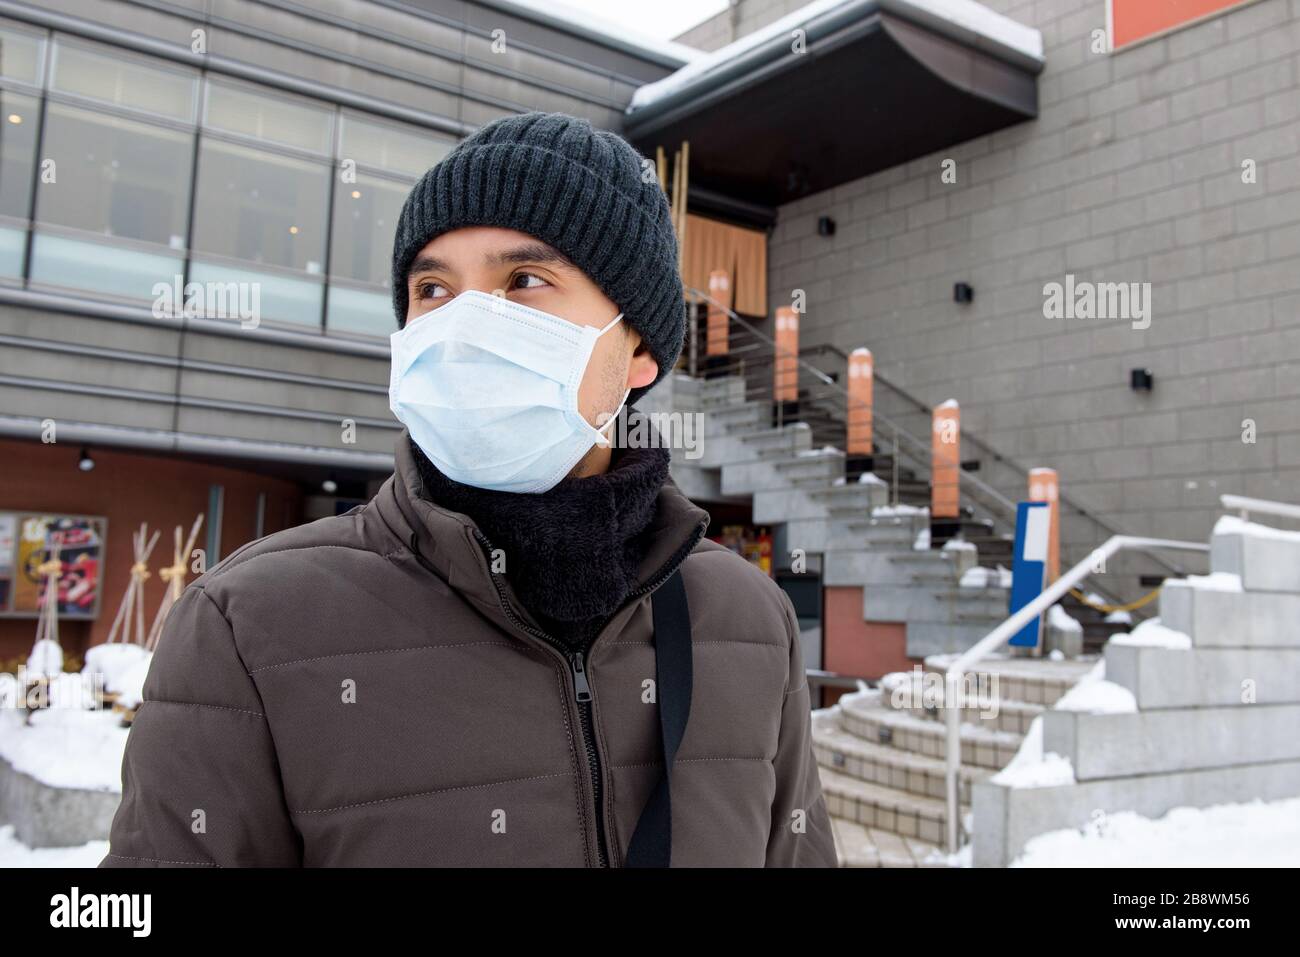 Asiatischer Tourist, der während des Winters in Japan eine Maske trägt, die Coronavirus schützt Stockfoto